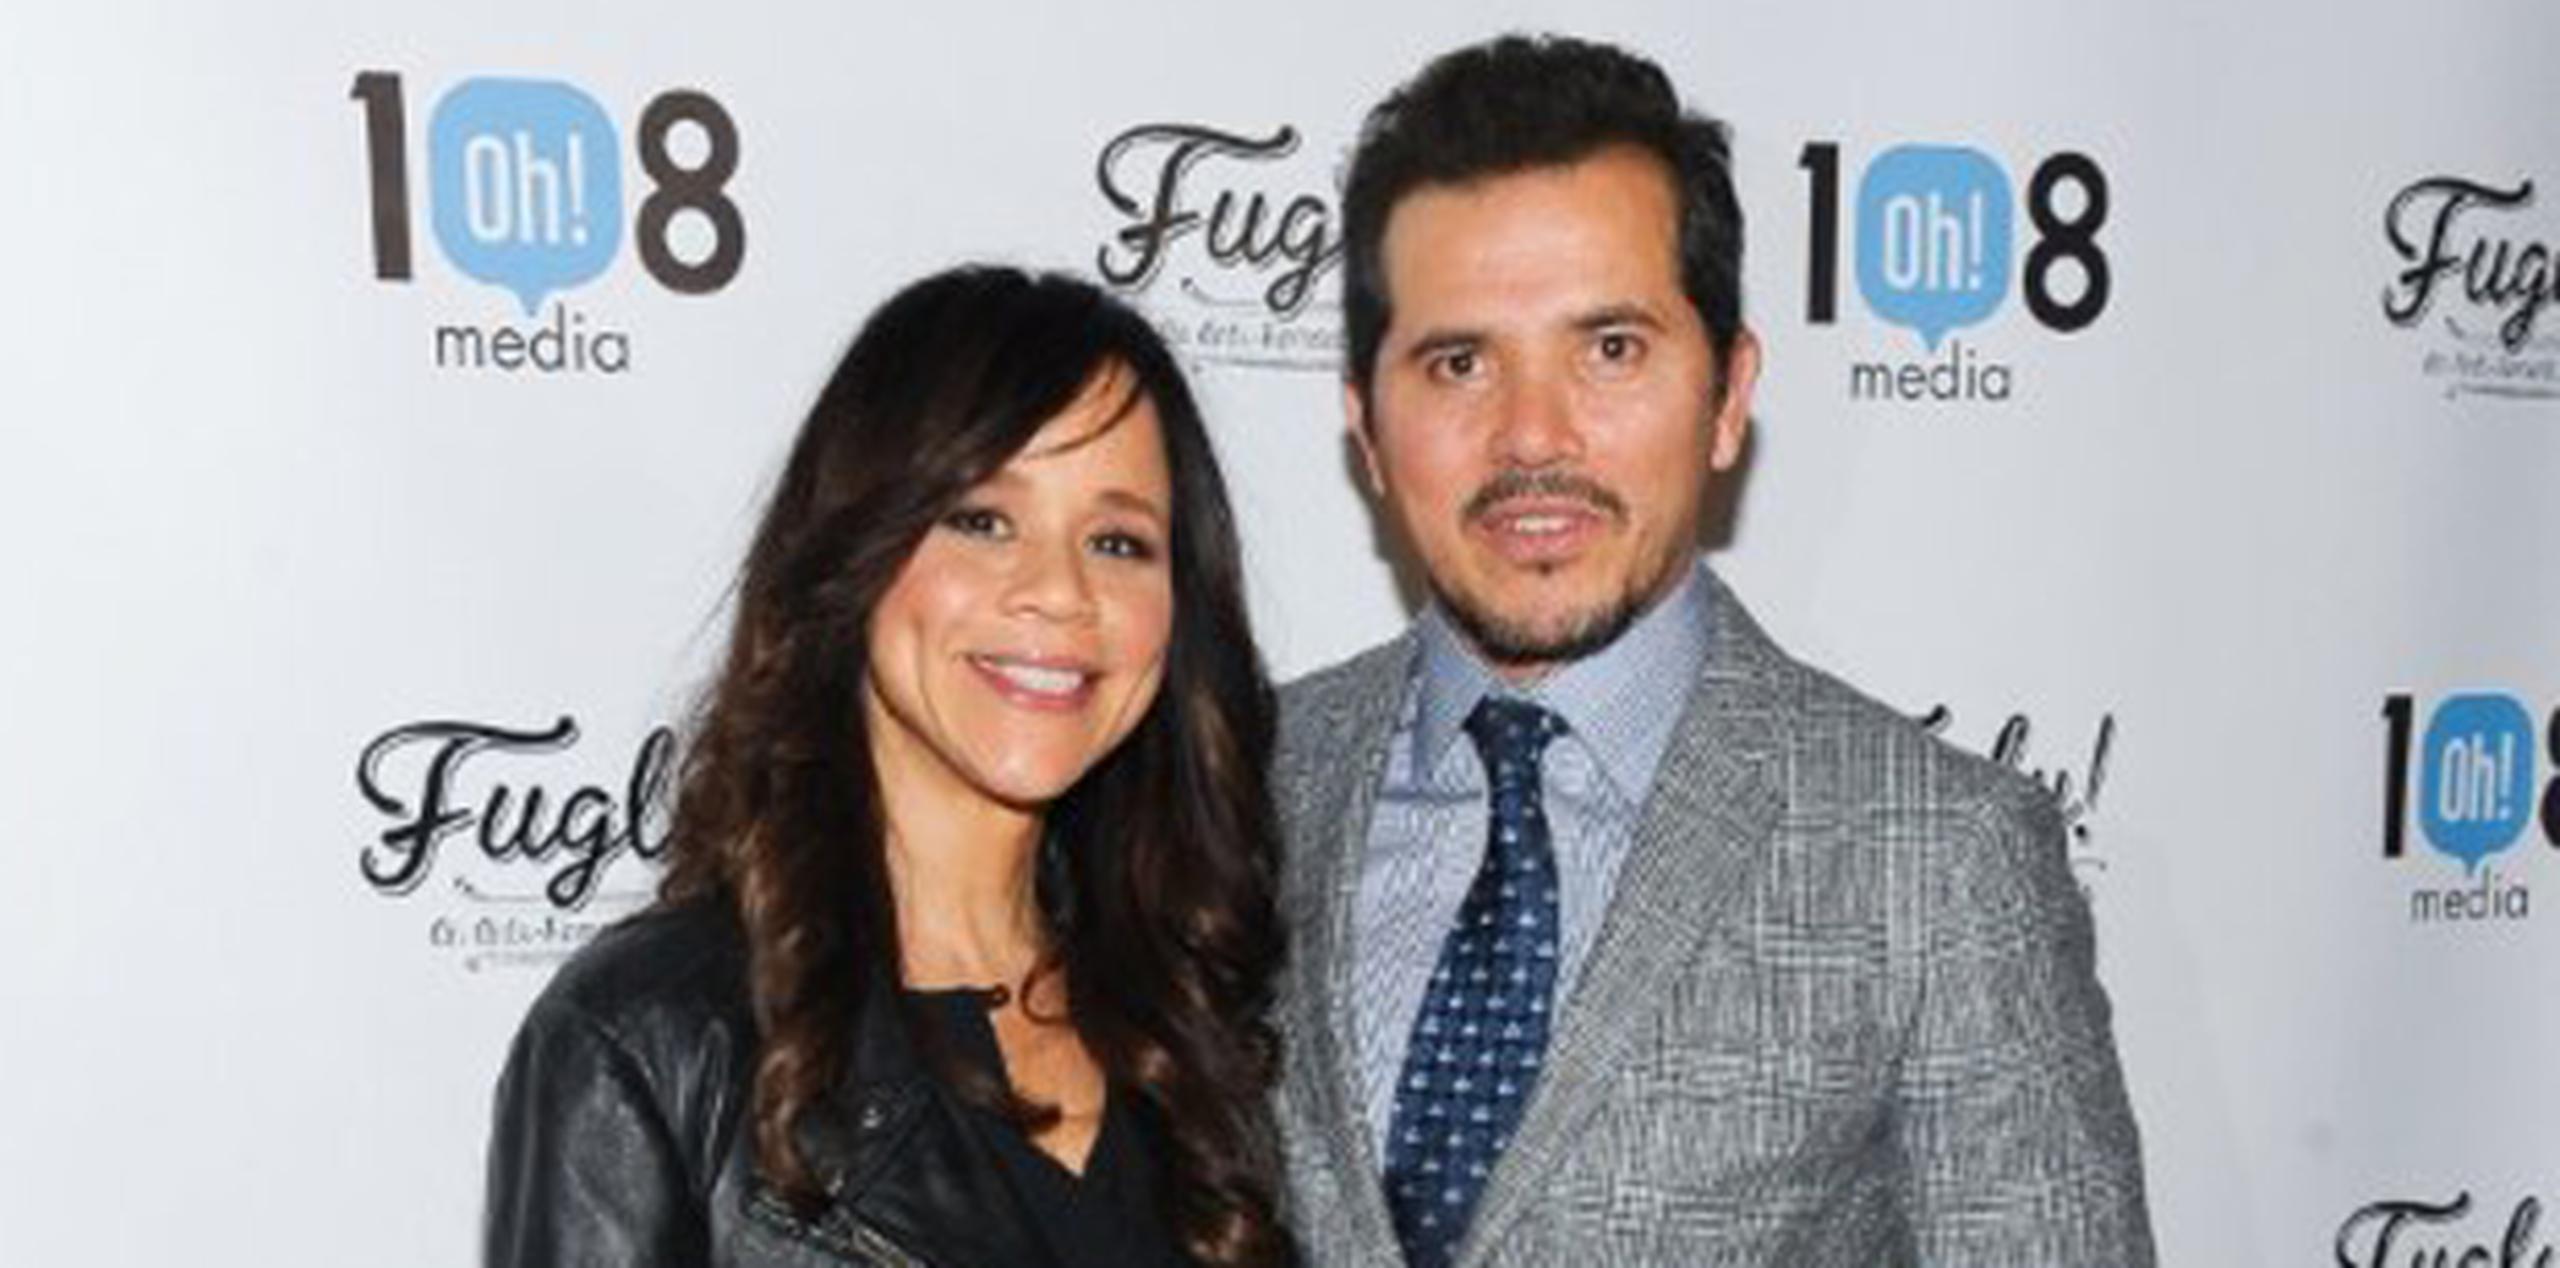 Rosie Pérez y John Leguizamo durante la premiere de "Fugly!" en Nueva York. (AP)